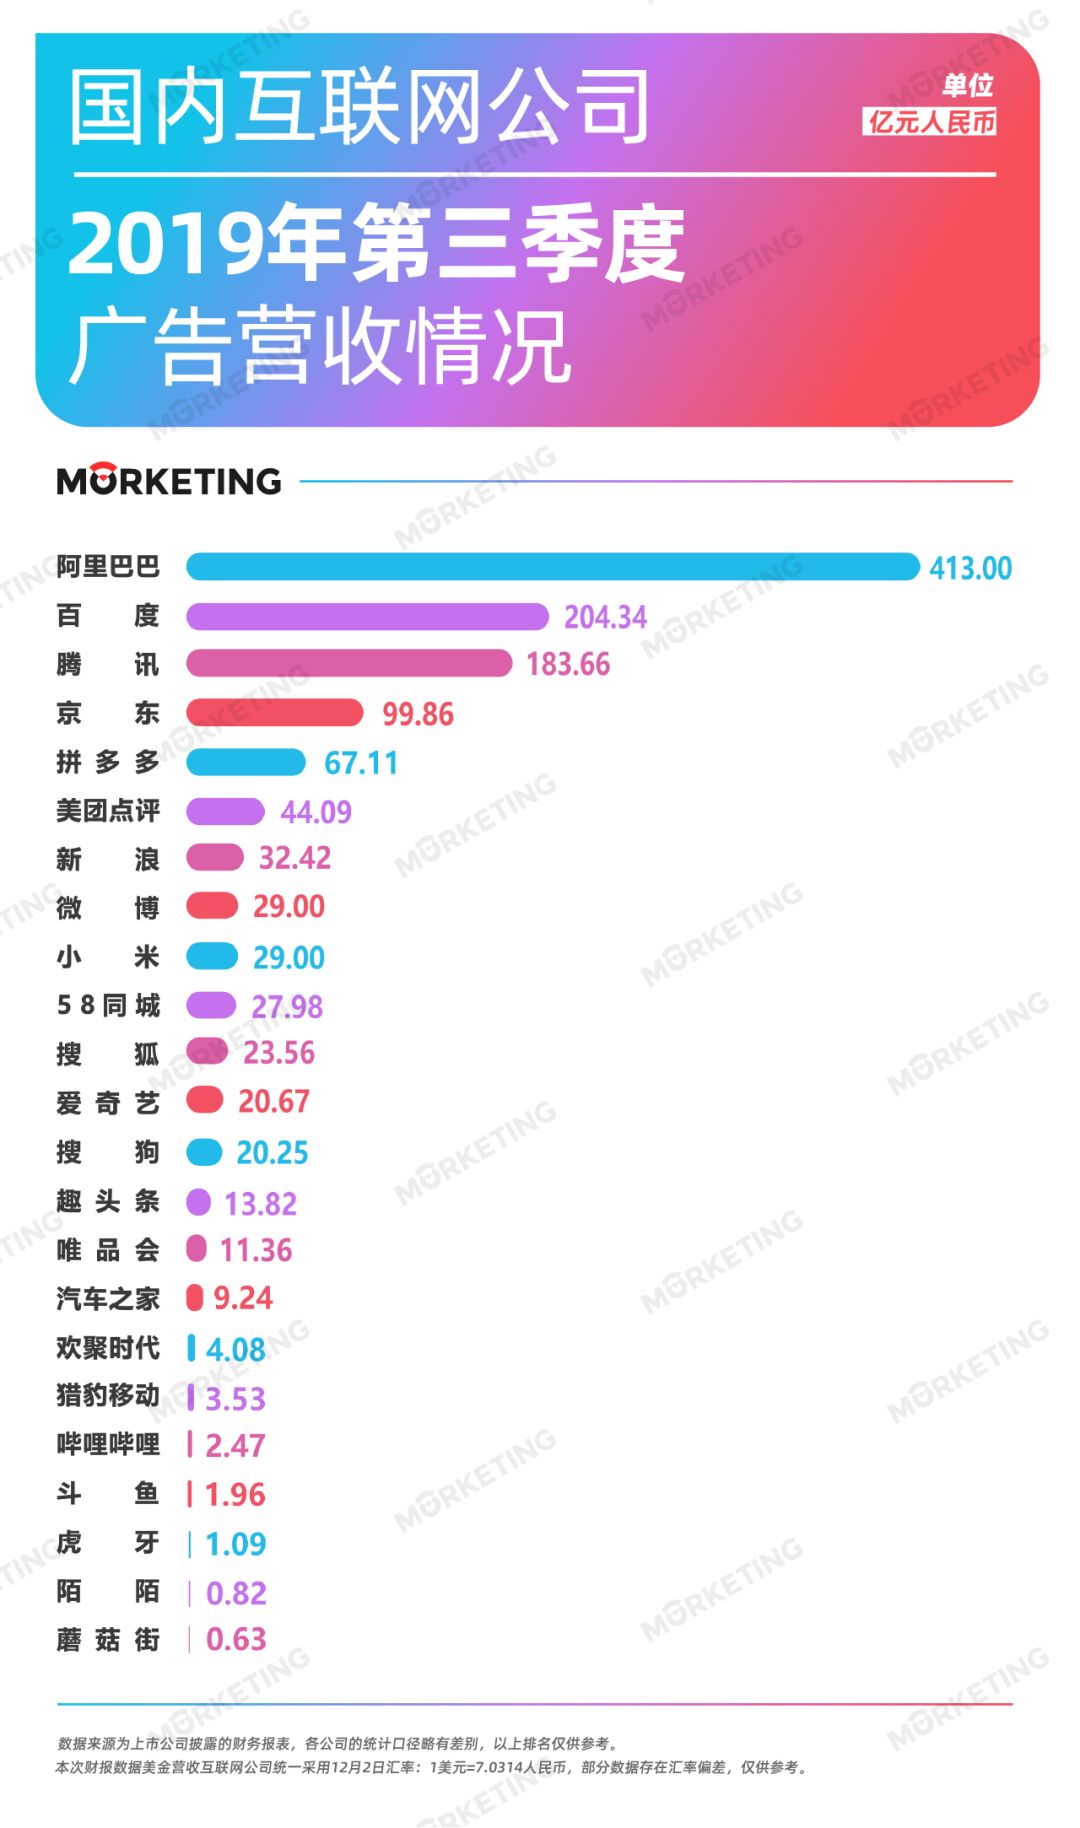 2019年Q3中国26大互联网公司广告收入榜